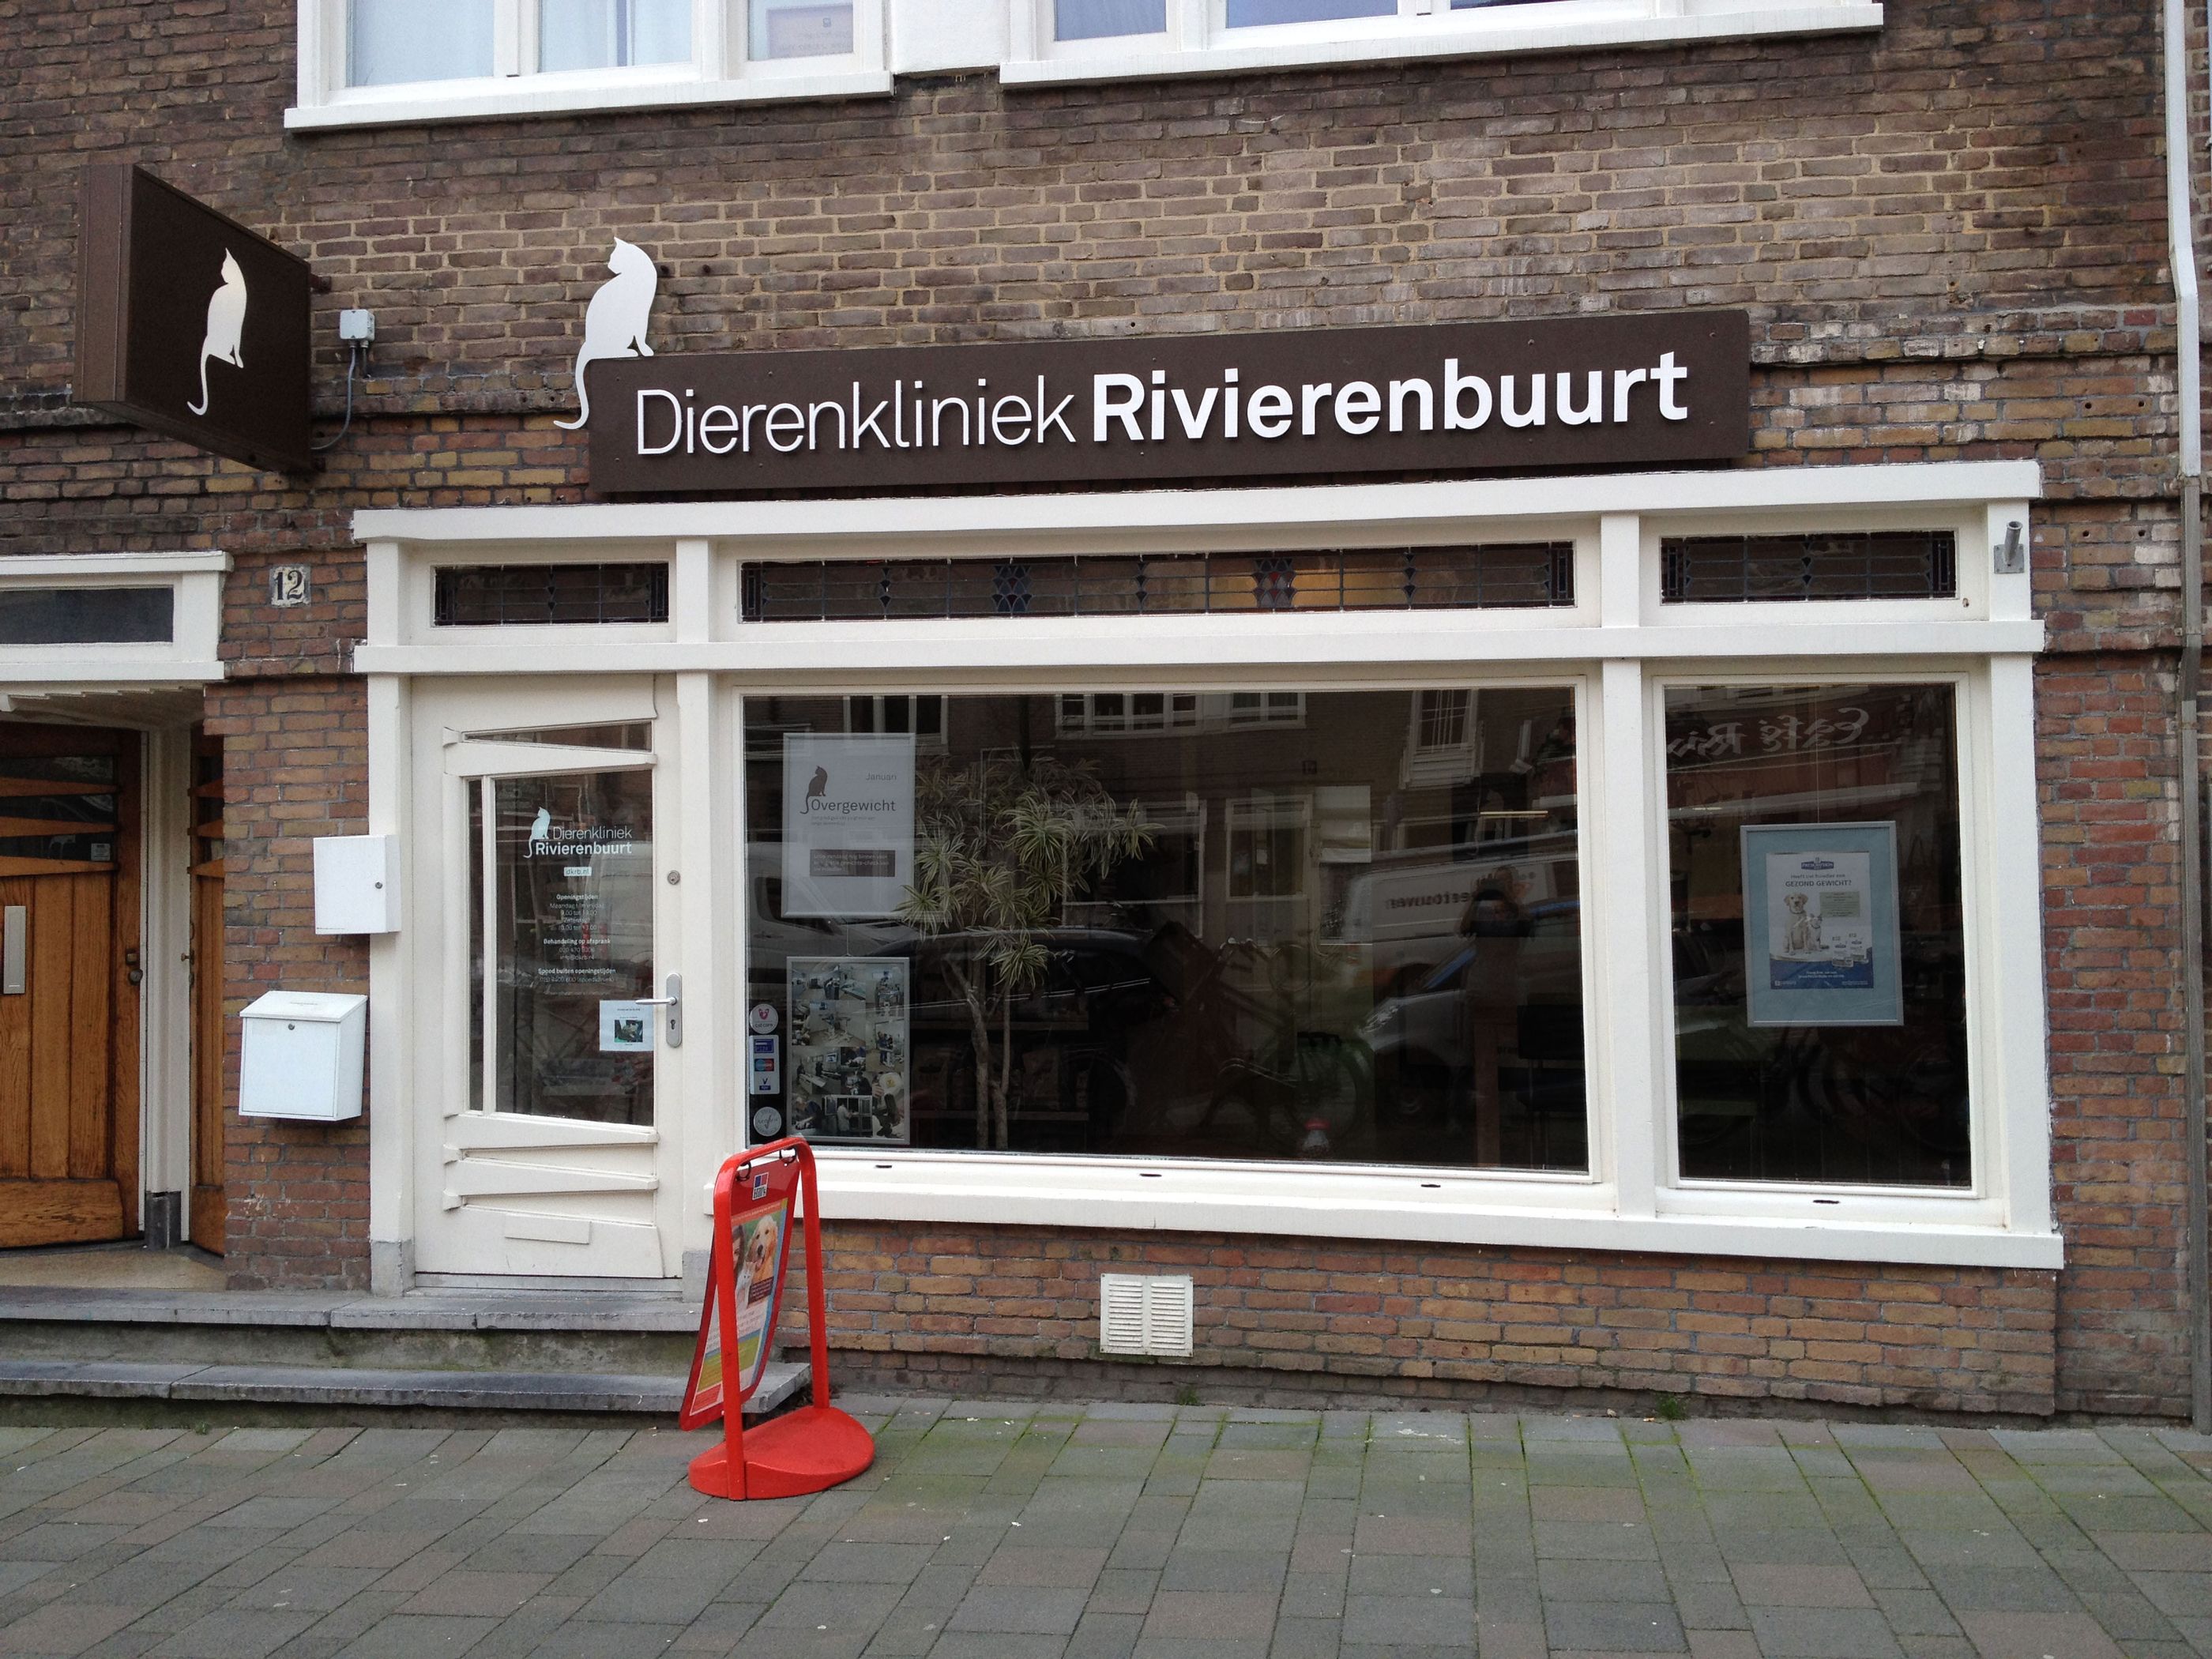 Design and development for Dierenkliniek Rivierenbuurt